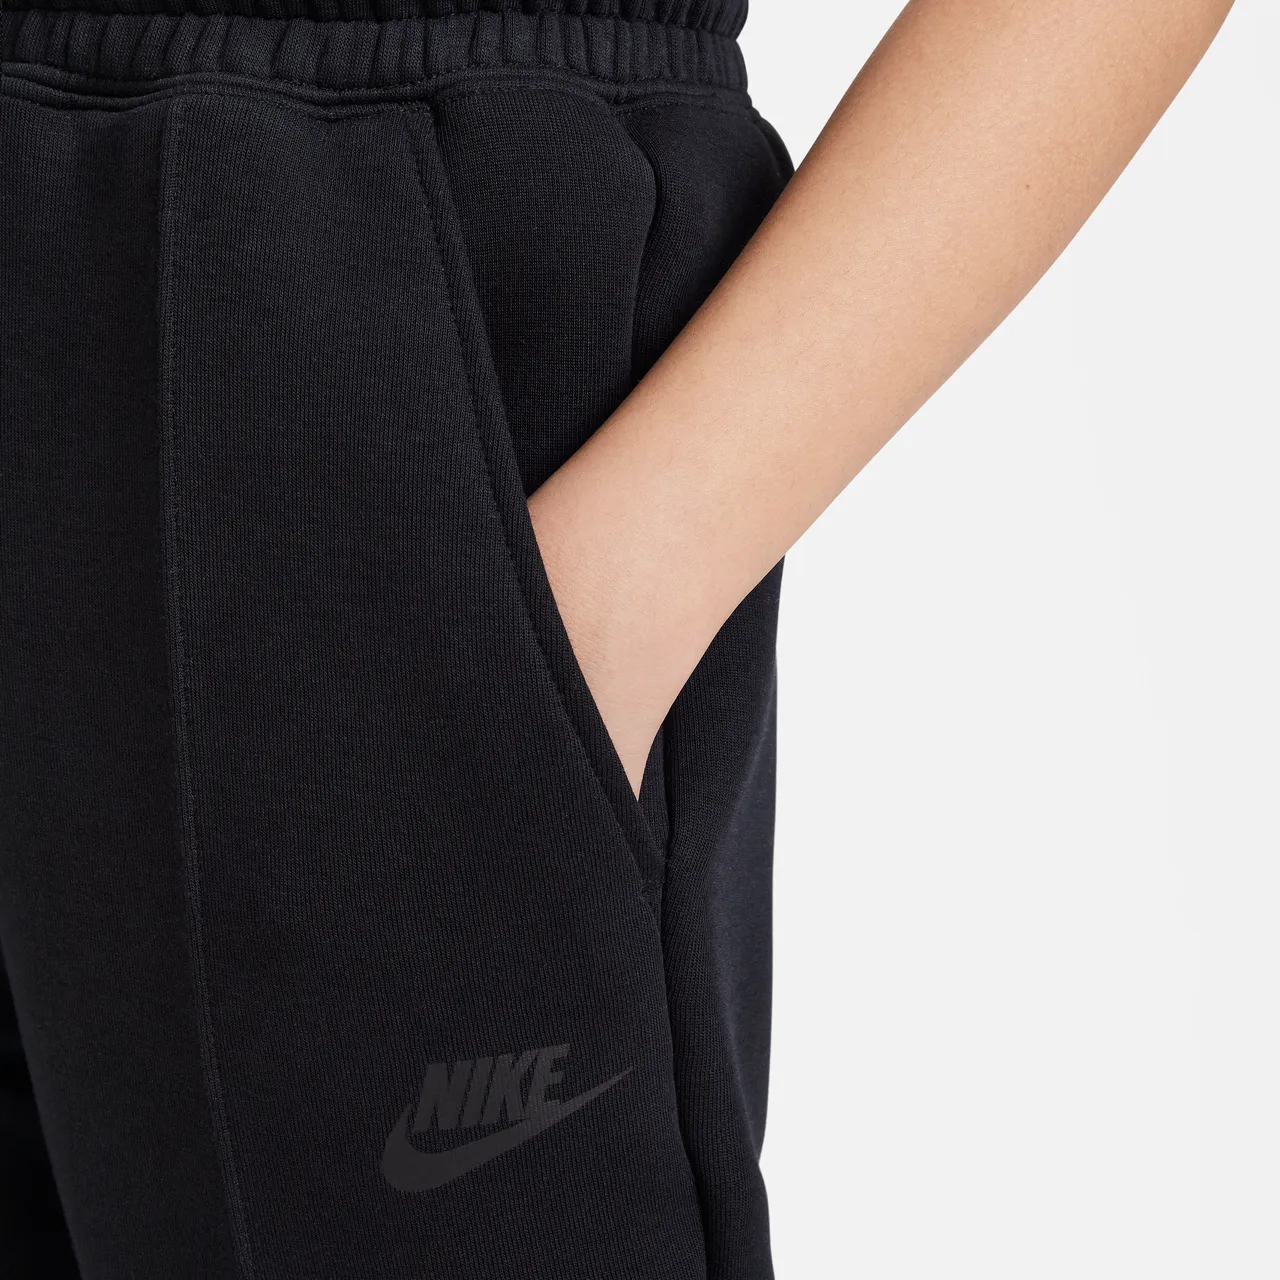 Nike Sportswear Tech Fleece Older Kids' (Girls') Joggers - Black - Polyester